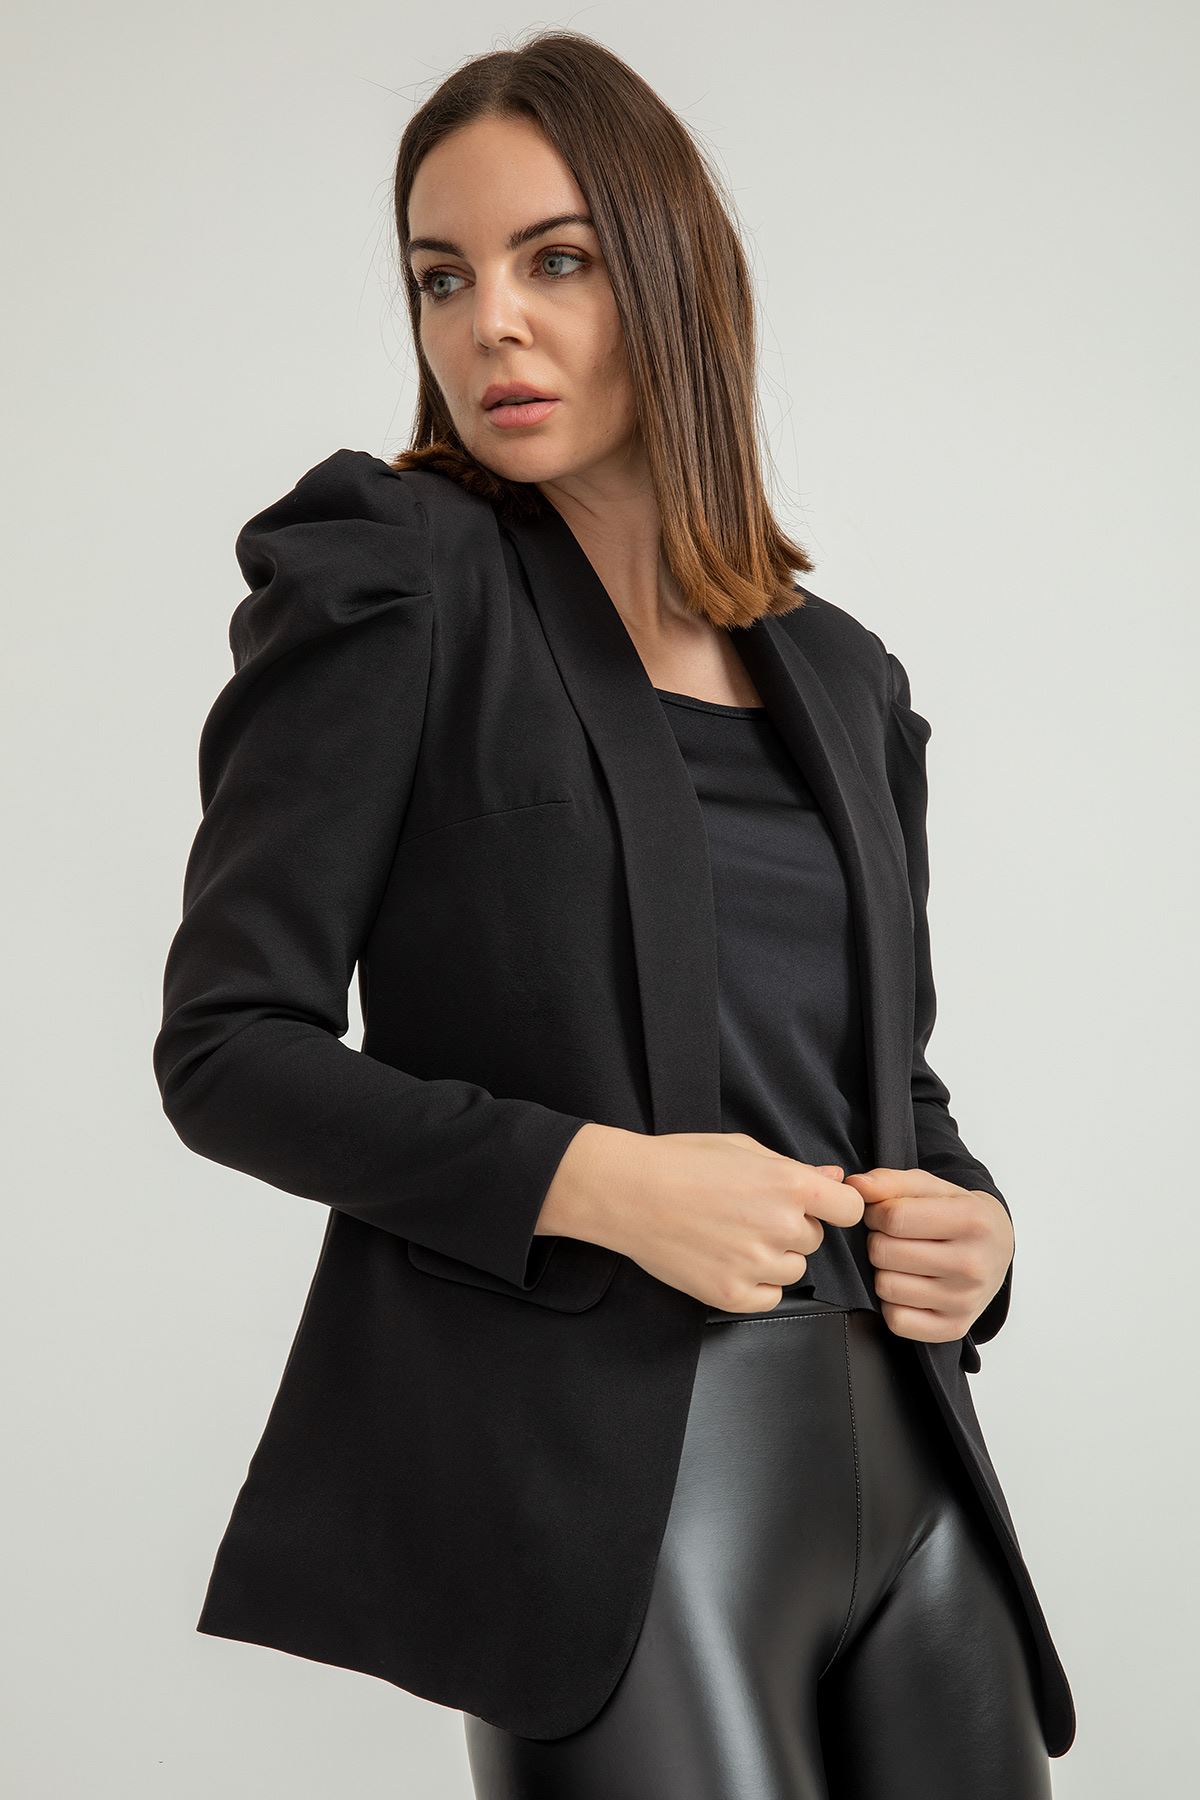 атласный ткань шалевый воротник длинный рукав Женский пиджак - Чёрный